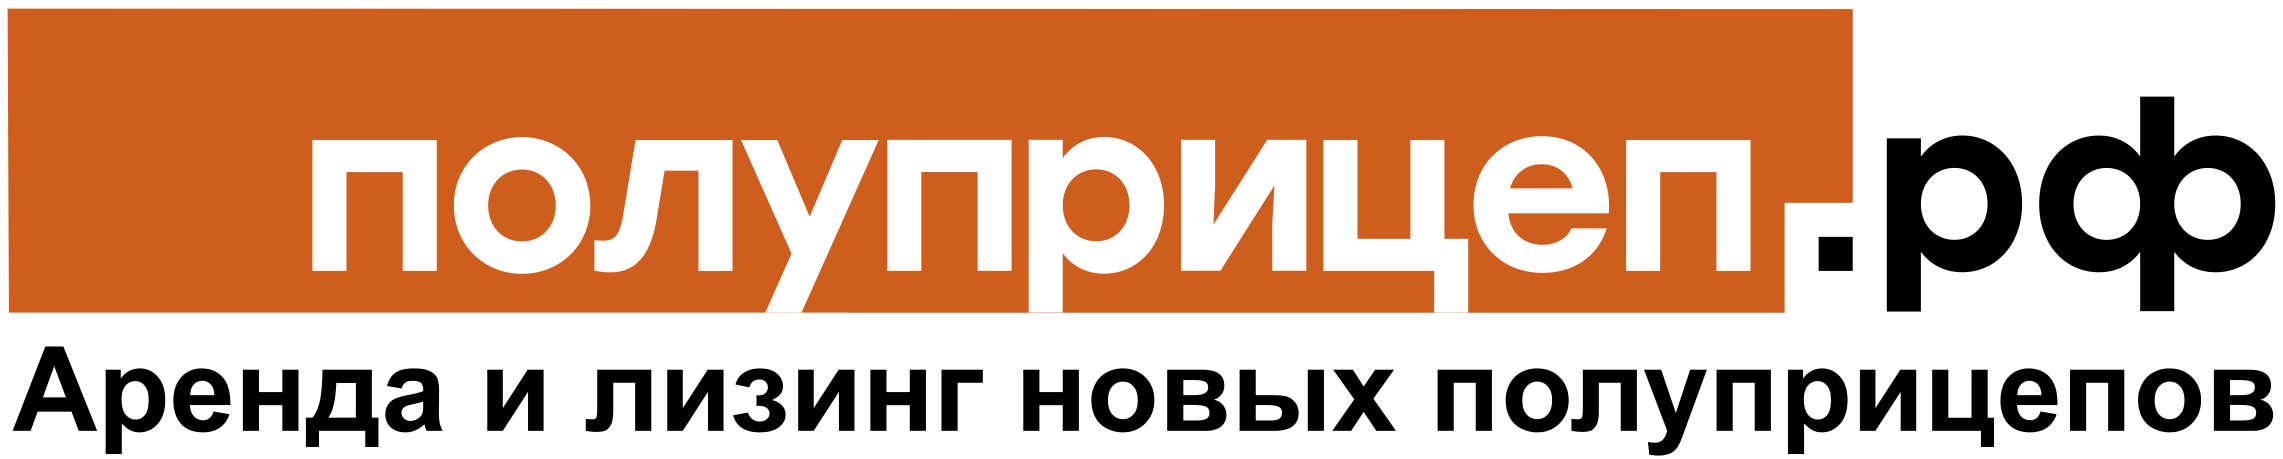 Логотип ppricep_leasing